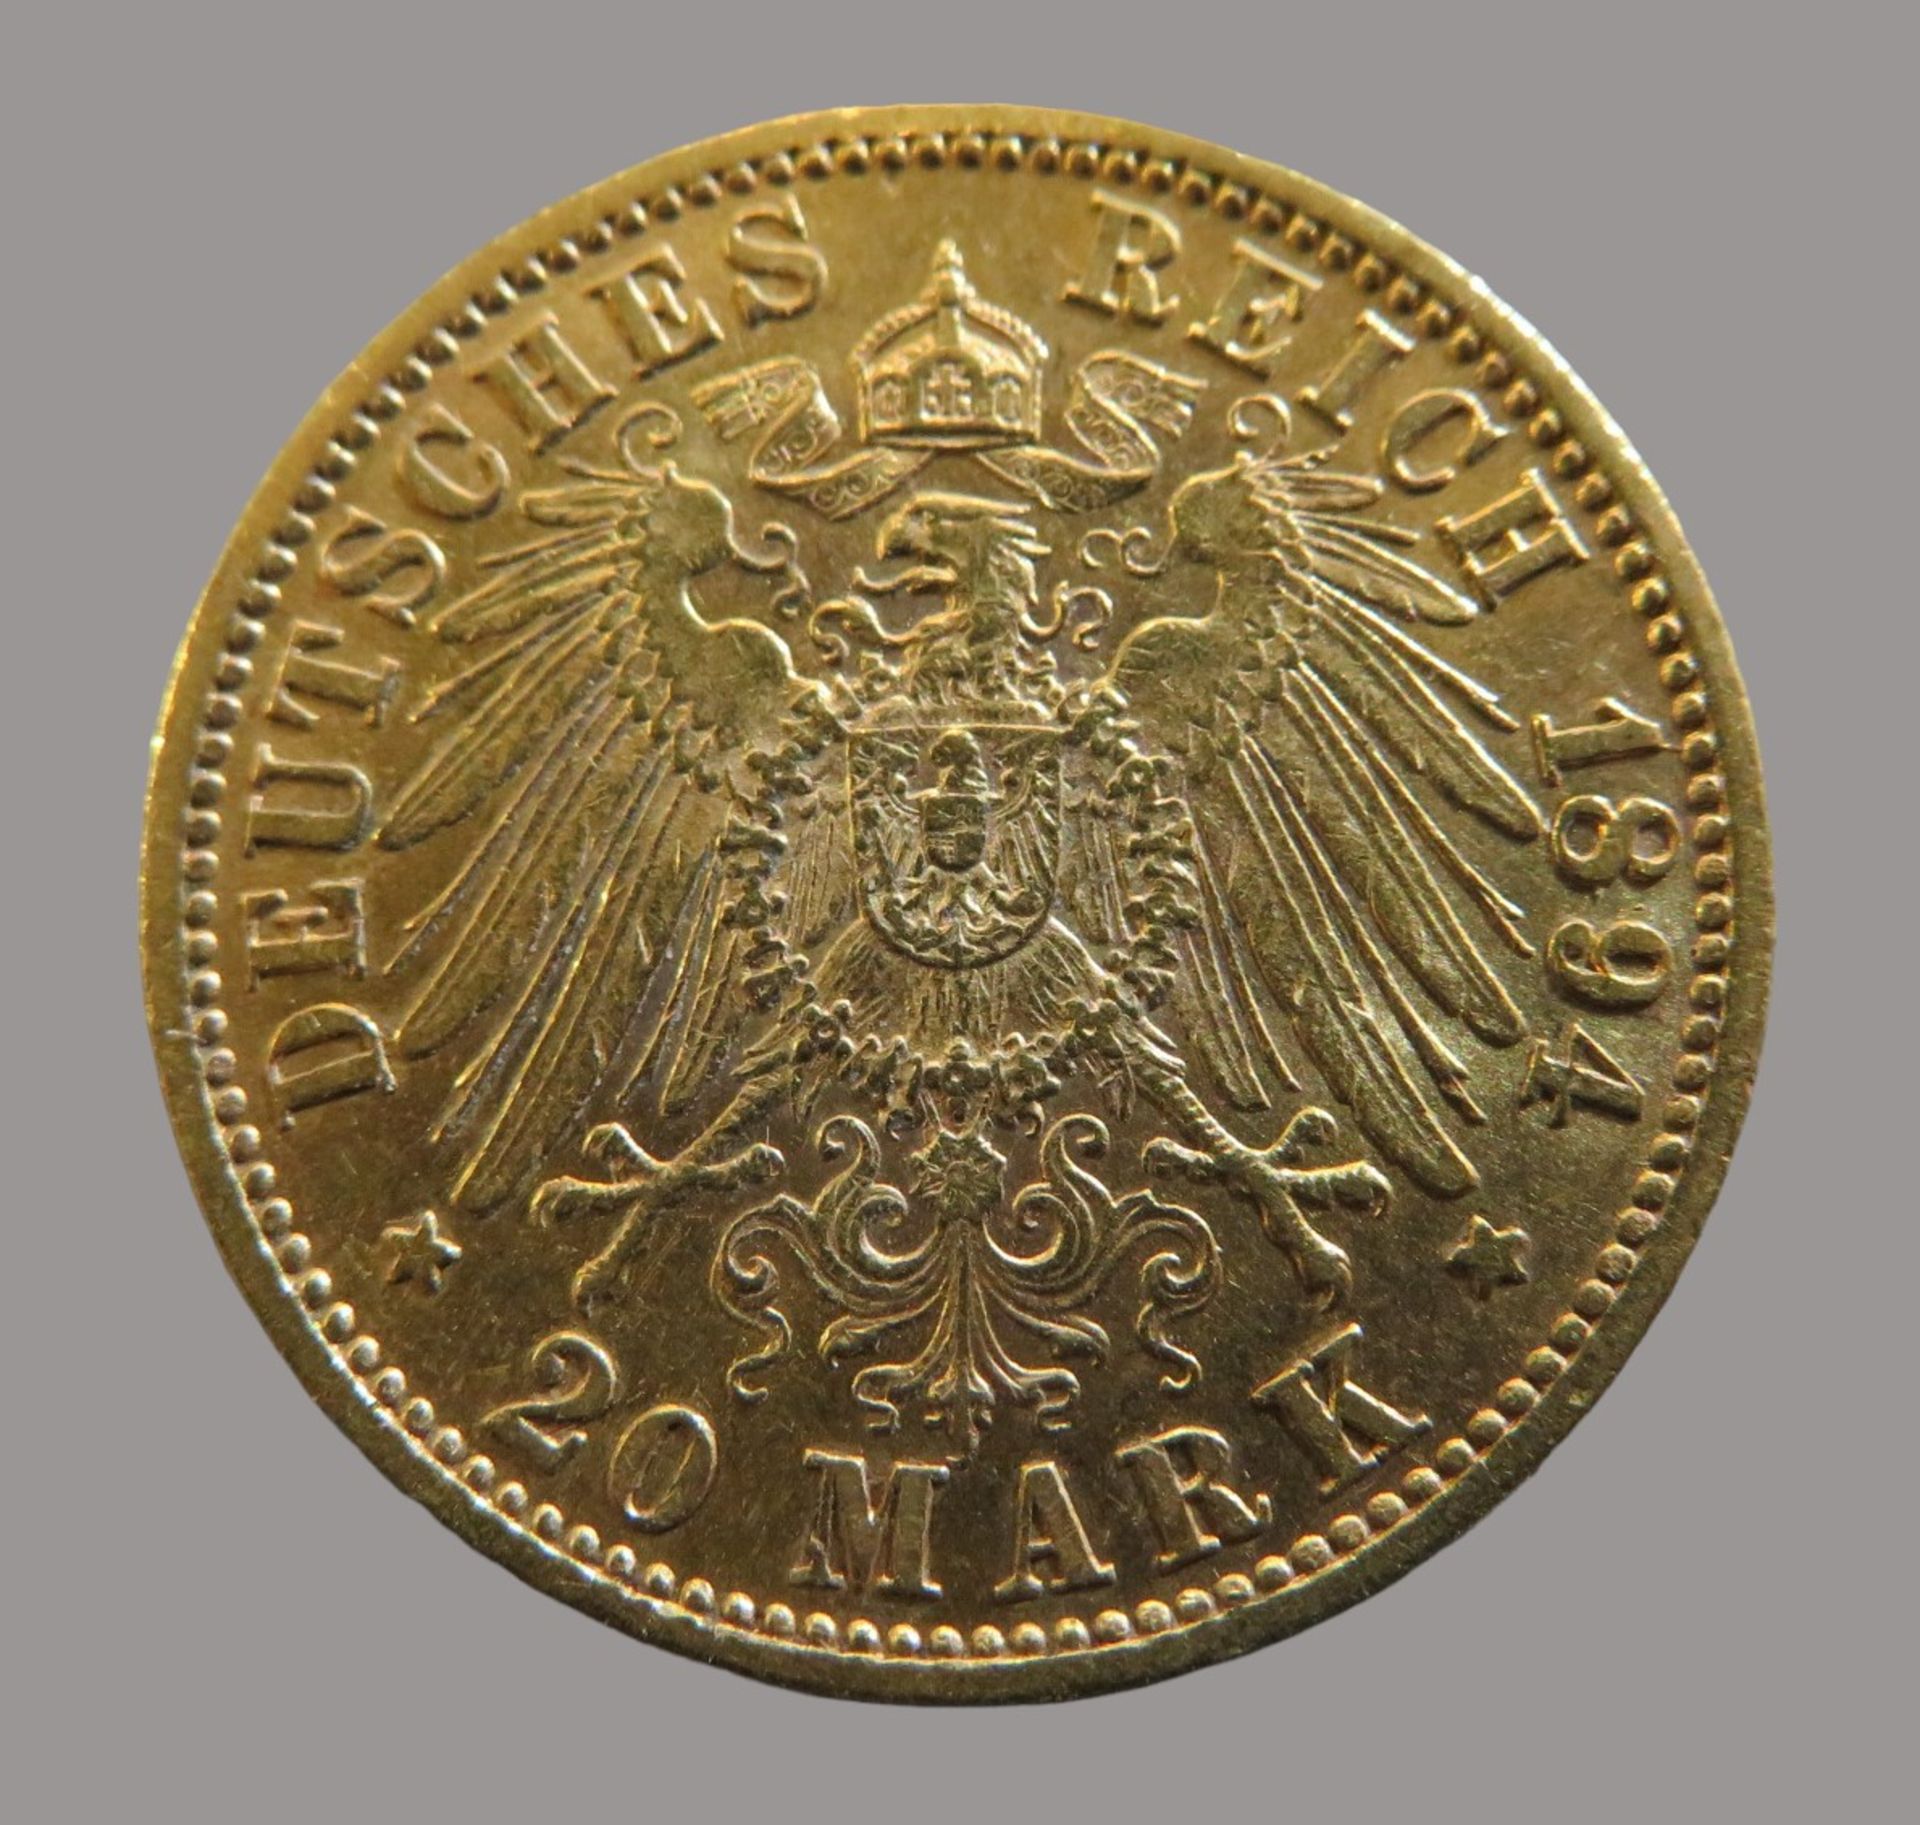 Goldmünze, 20 Mark, König Wilhelm II. von Württemberg, 1894F, Gold 900/000, 7,96 g, J 296, Erhaltun - Image 2 of 2